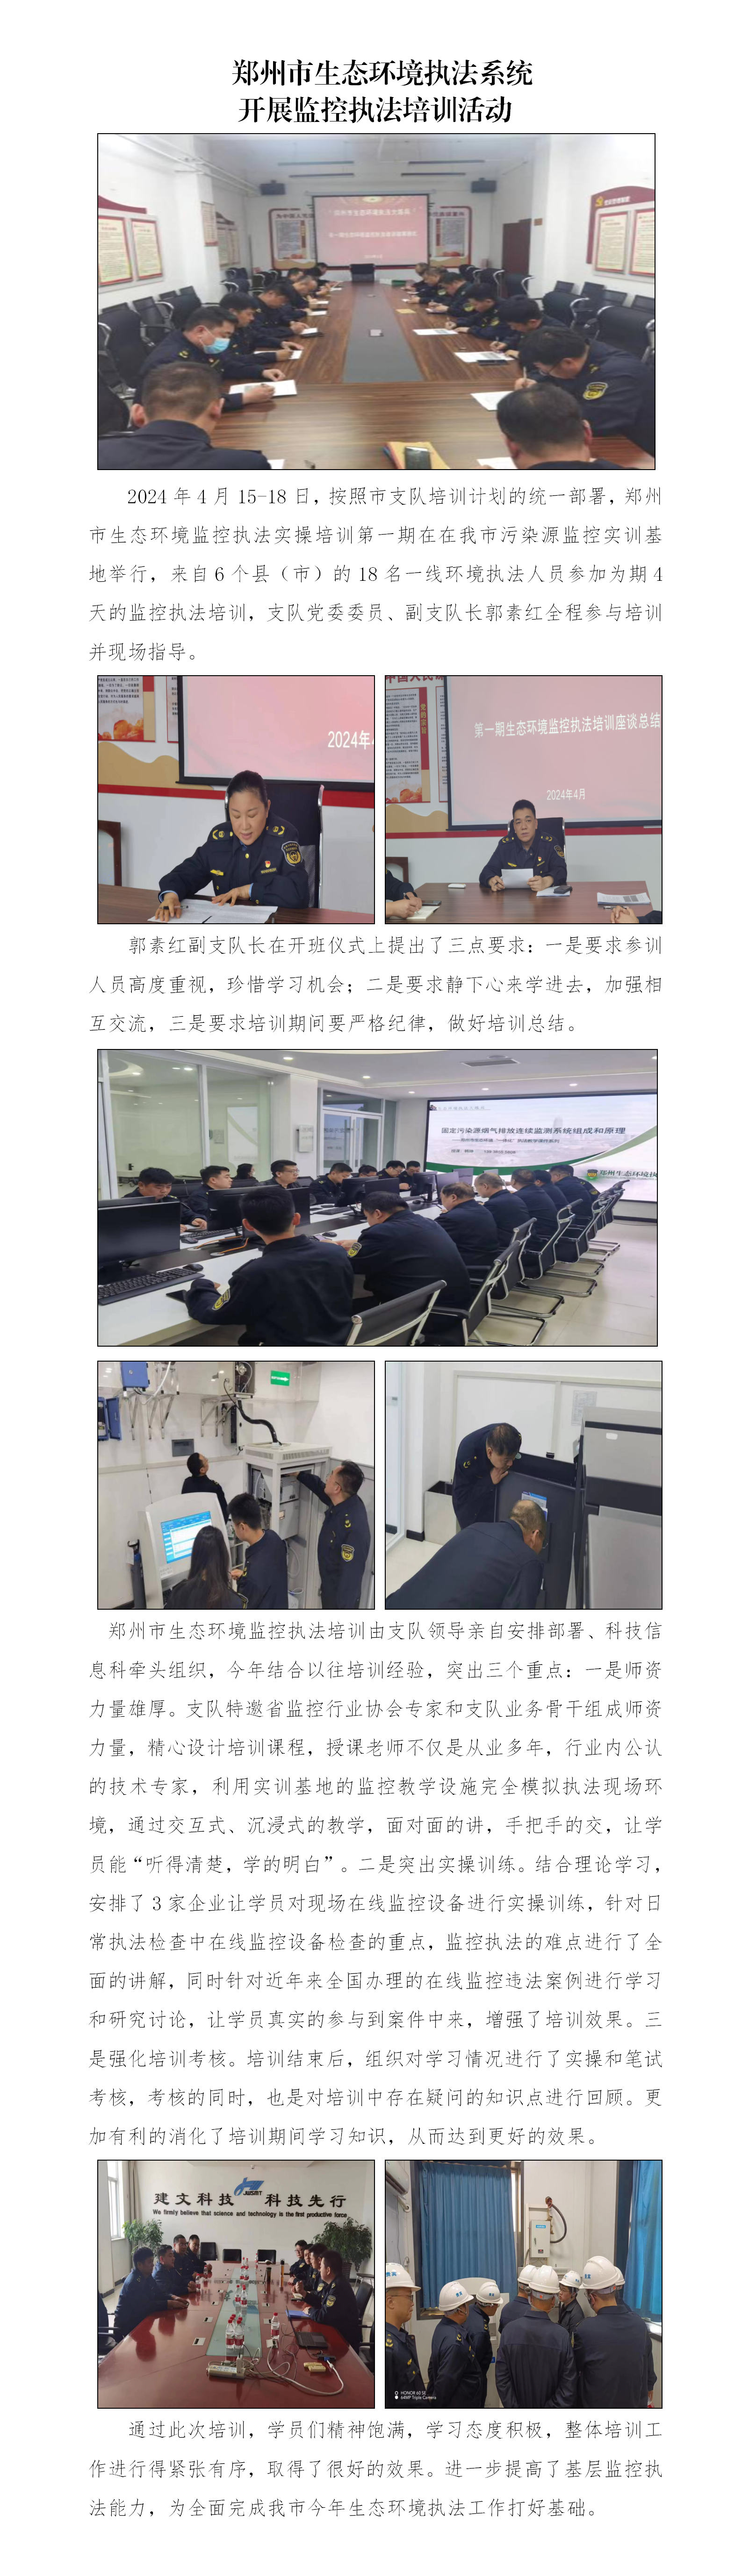 第8期 郑州市生态环境执法系统开展监控执法培训活动_01.png